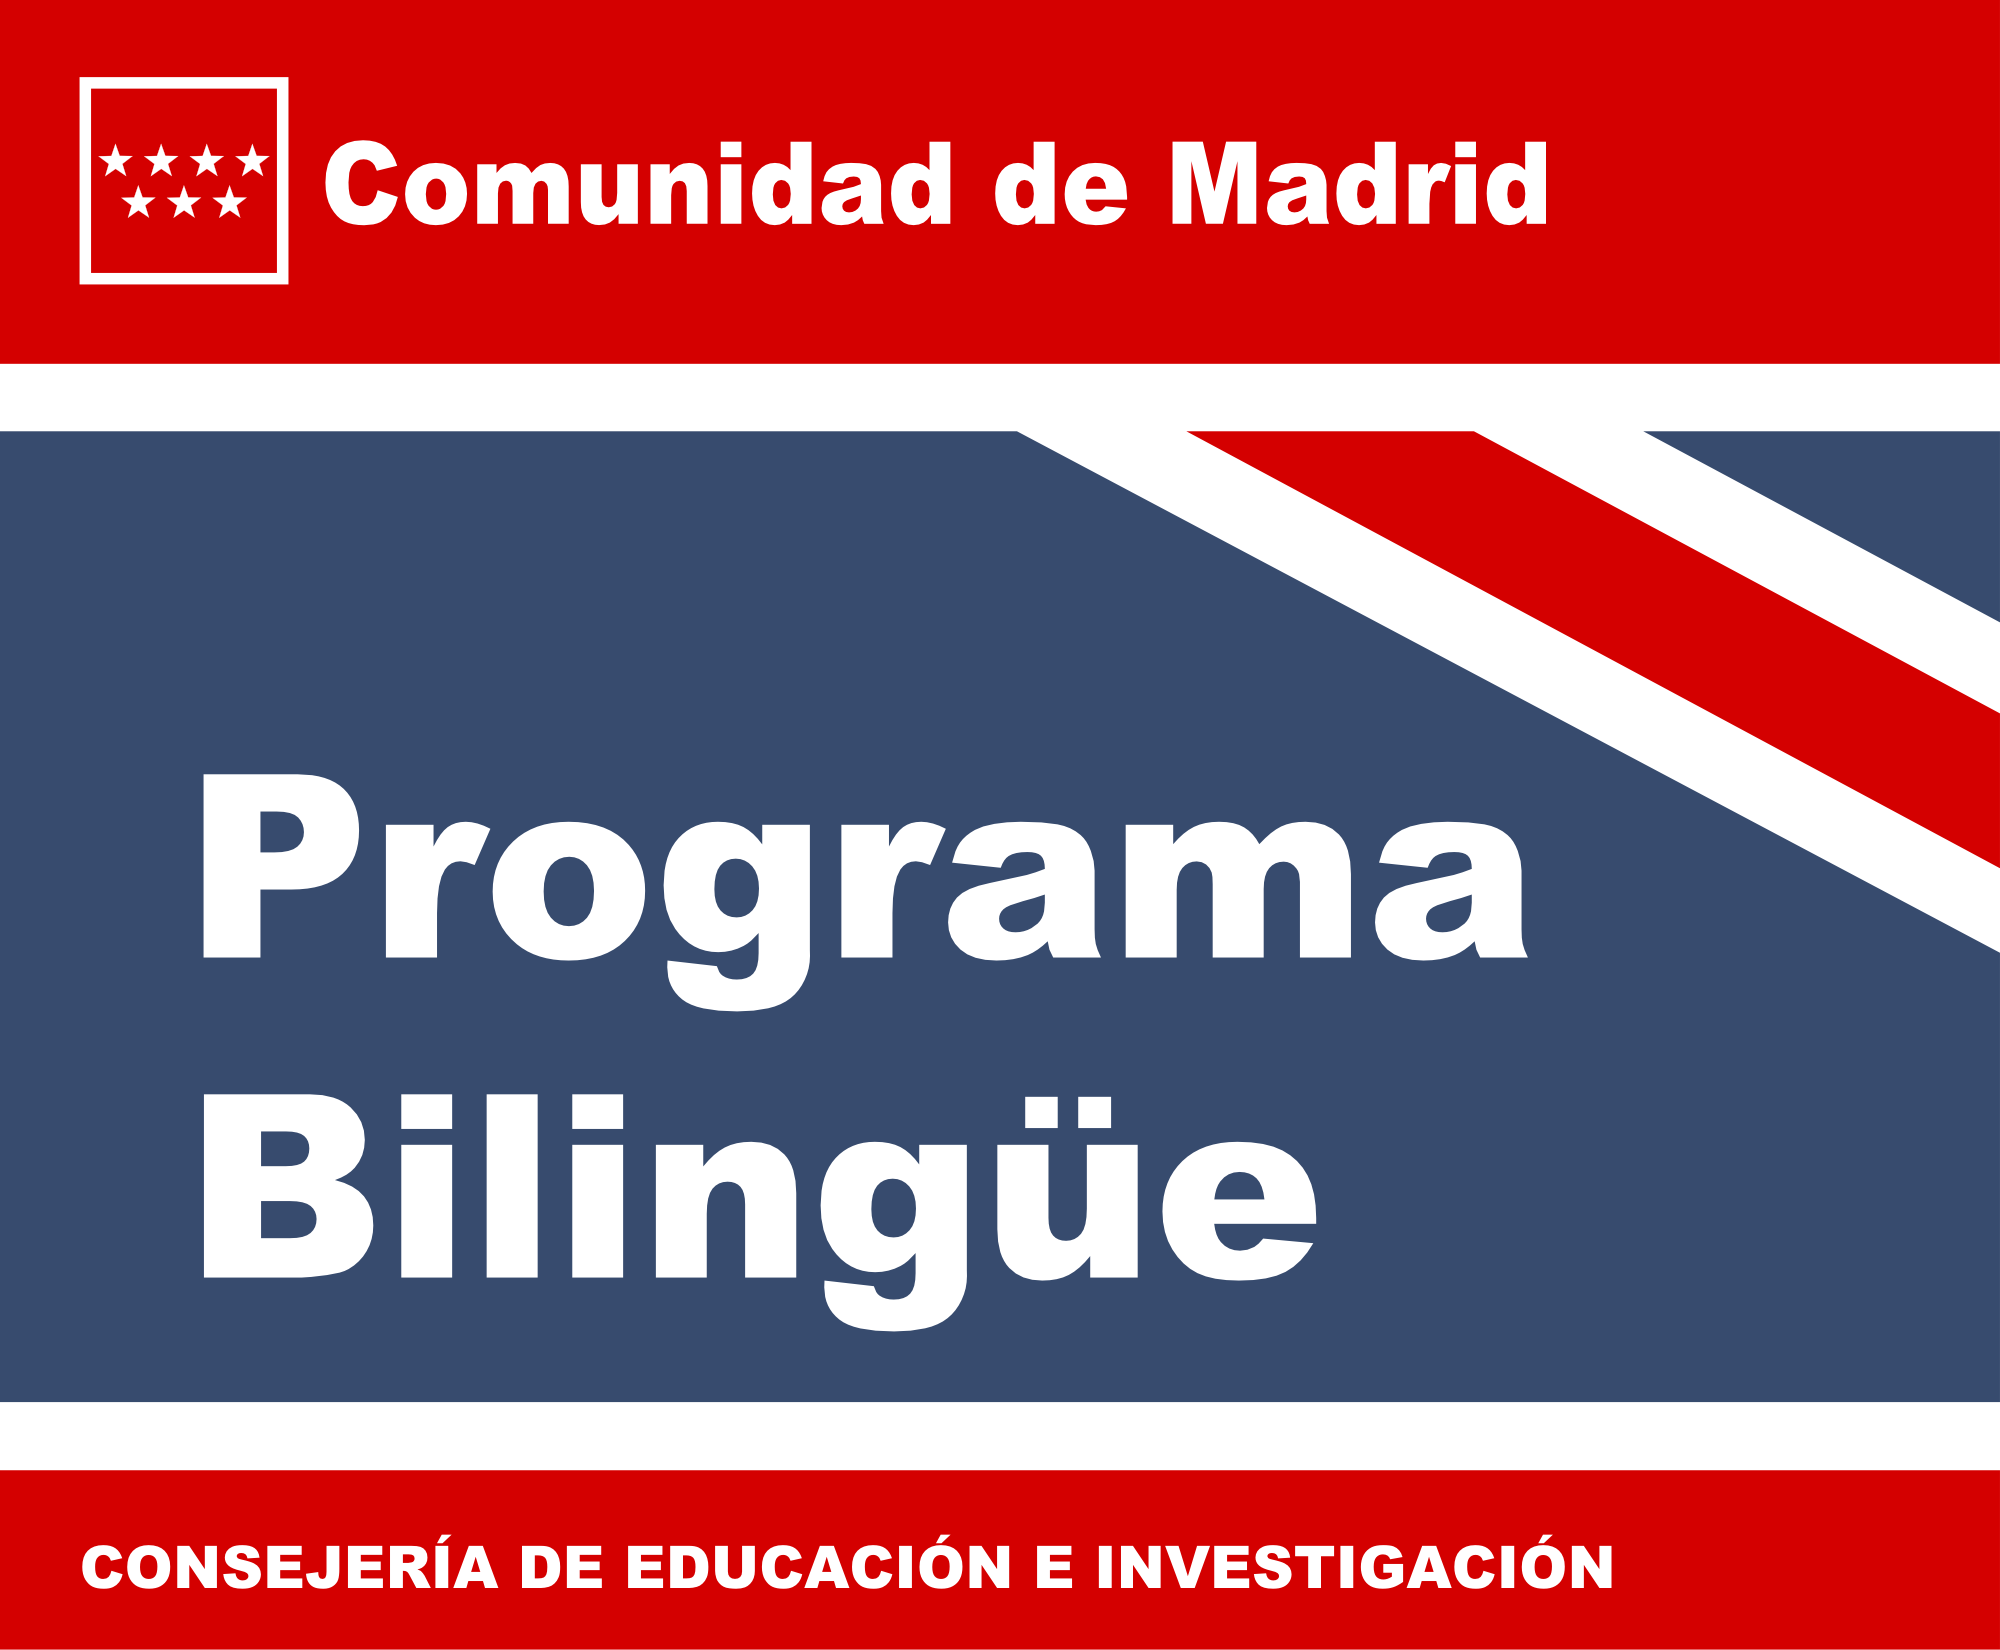 Comunidad de Madrid, programa Bilingüe. Consejería de Educación e Investigación